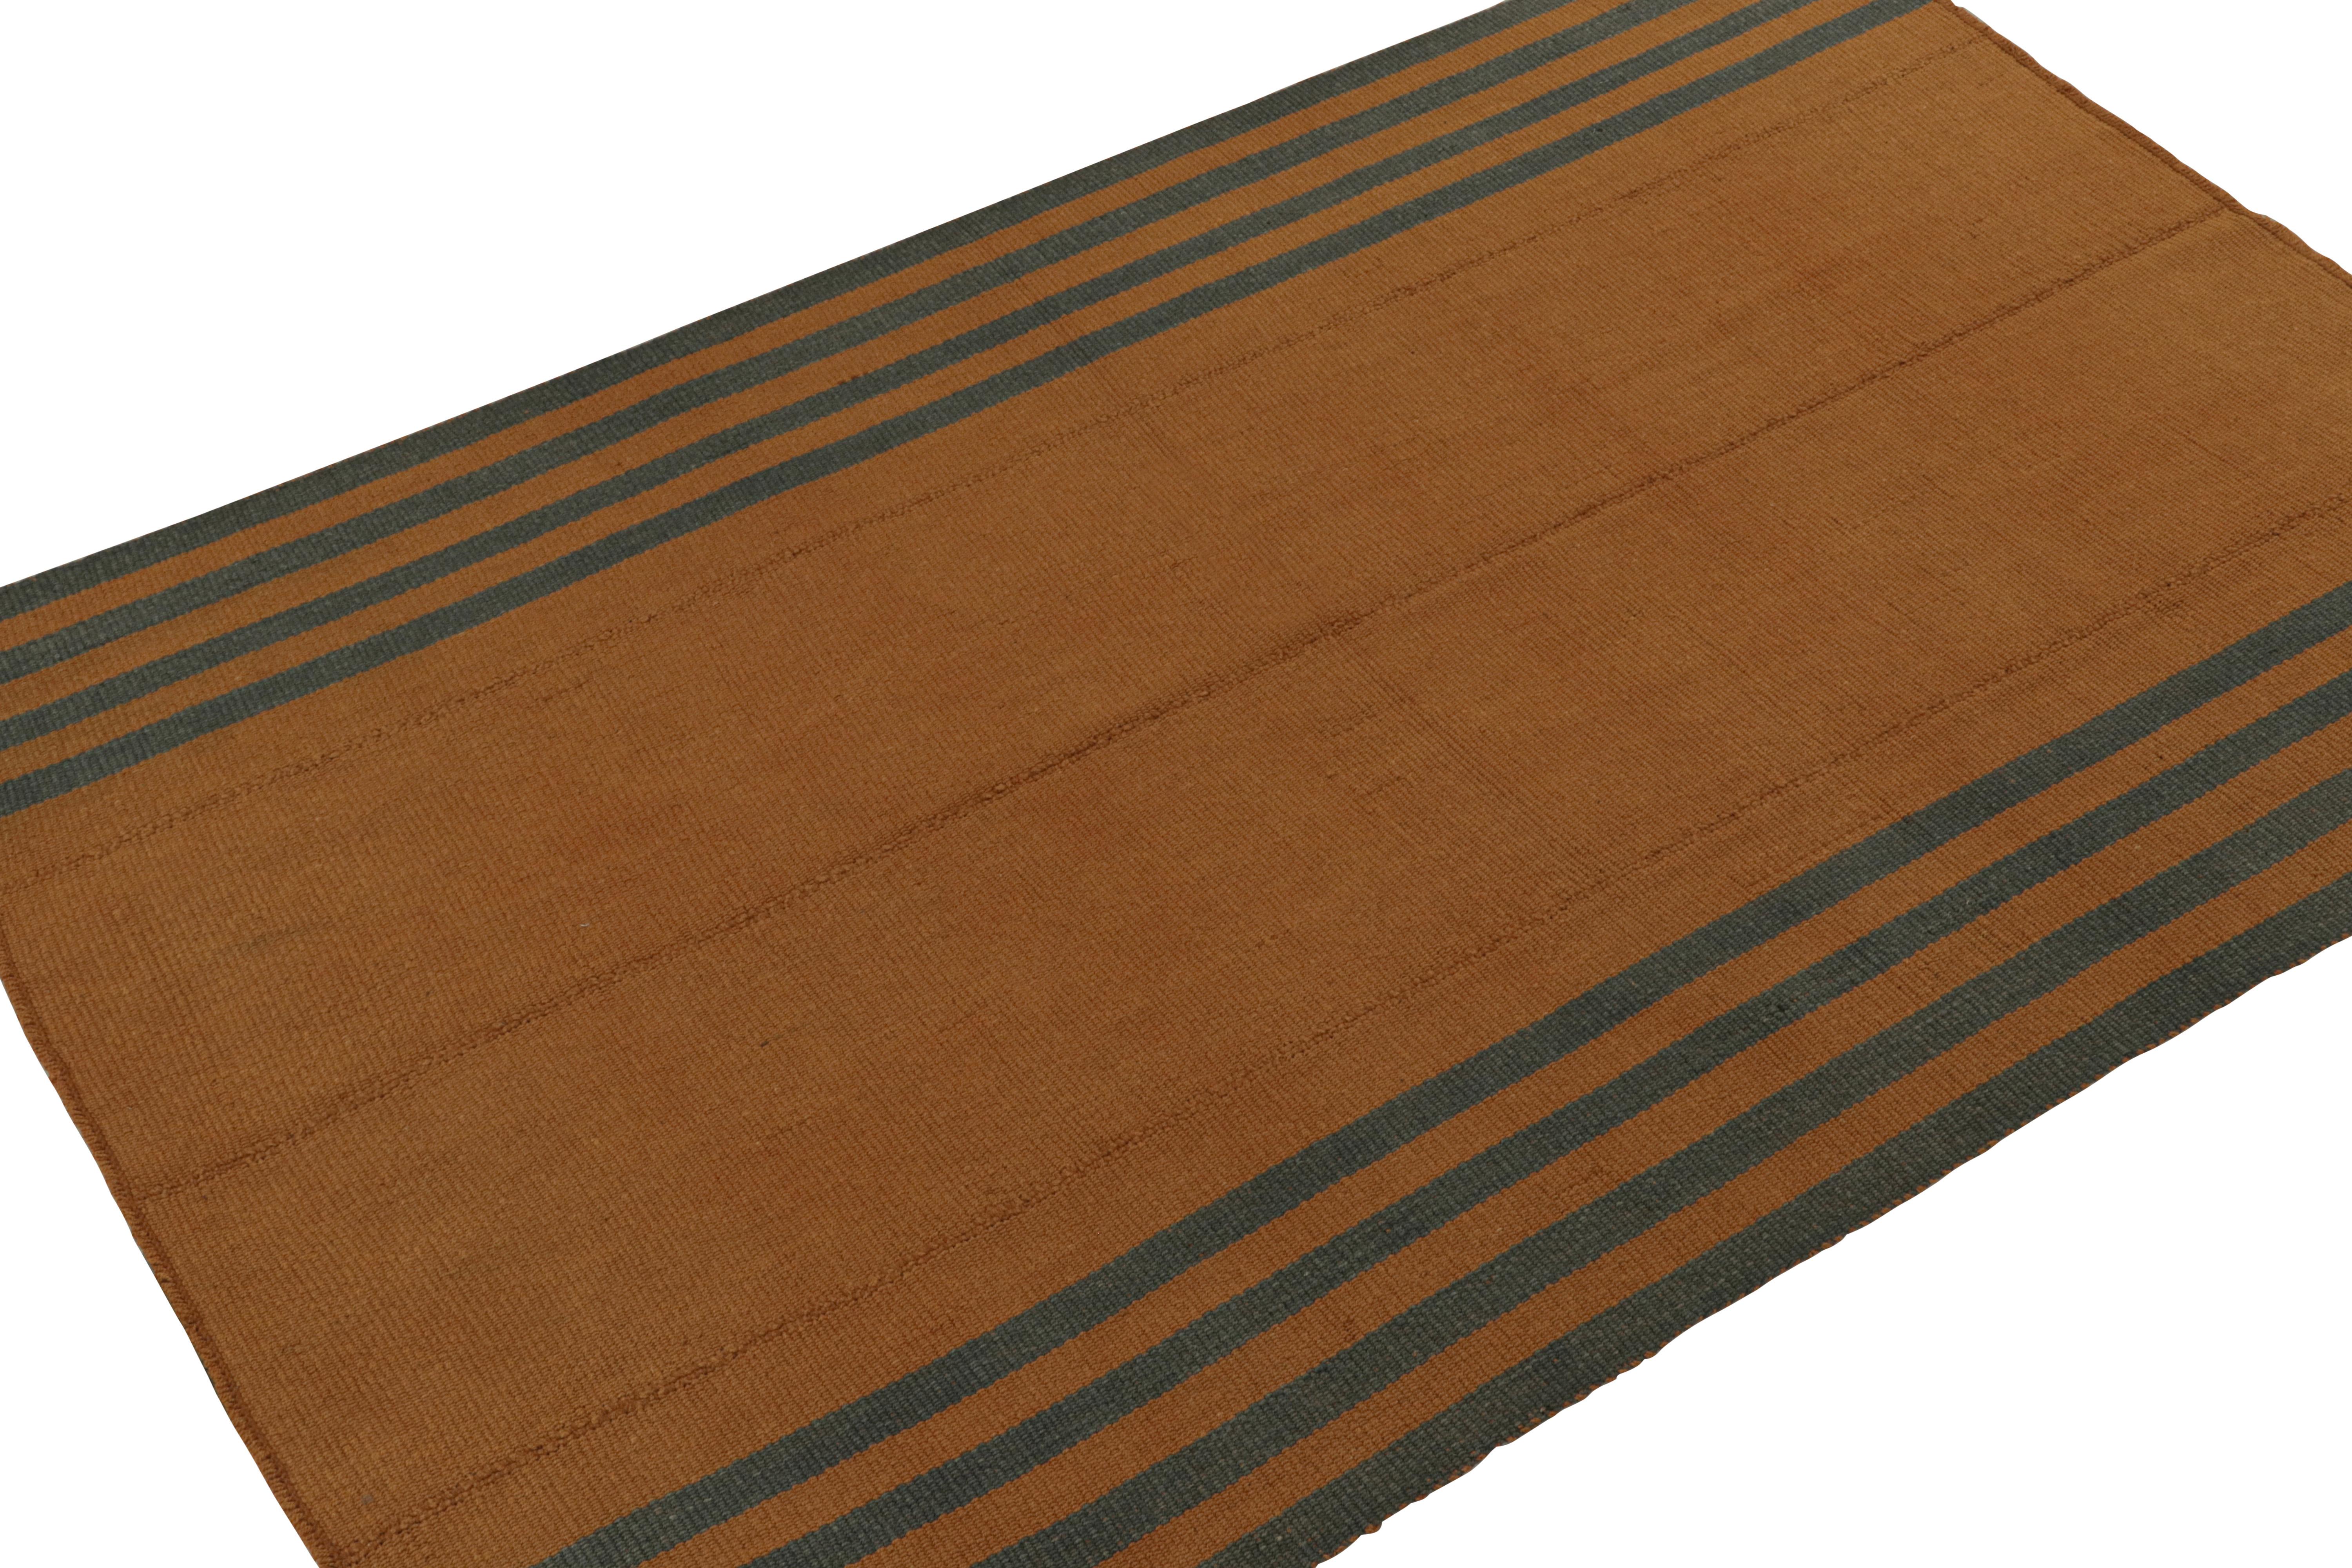 Handgewebter 7x10-Kilim aus Wolle, aus einer kühnen neuen Linie zeitgenössischer Flachgewebe von Rug & Kilim.

Über das Design: 

Unser neuester 